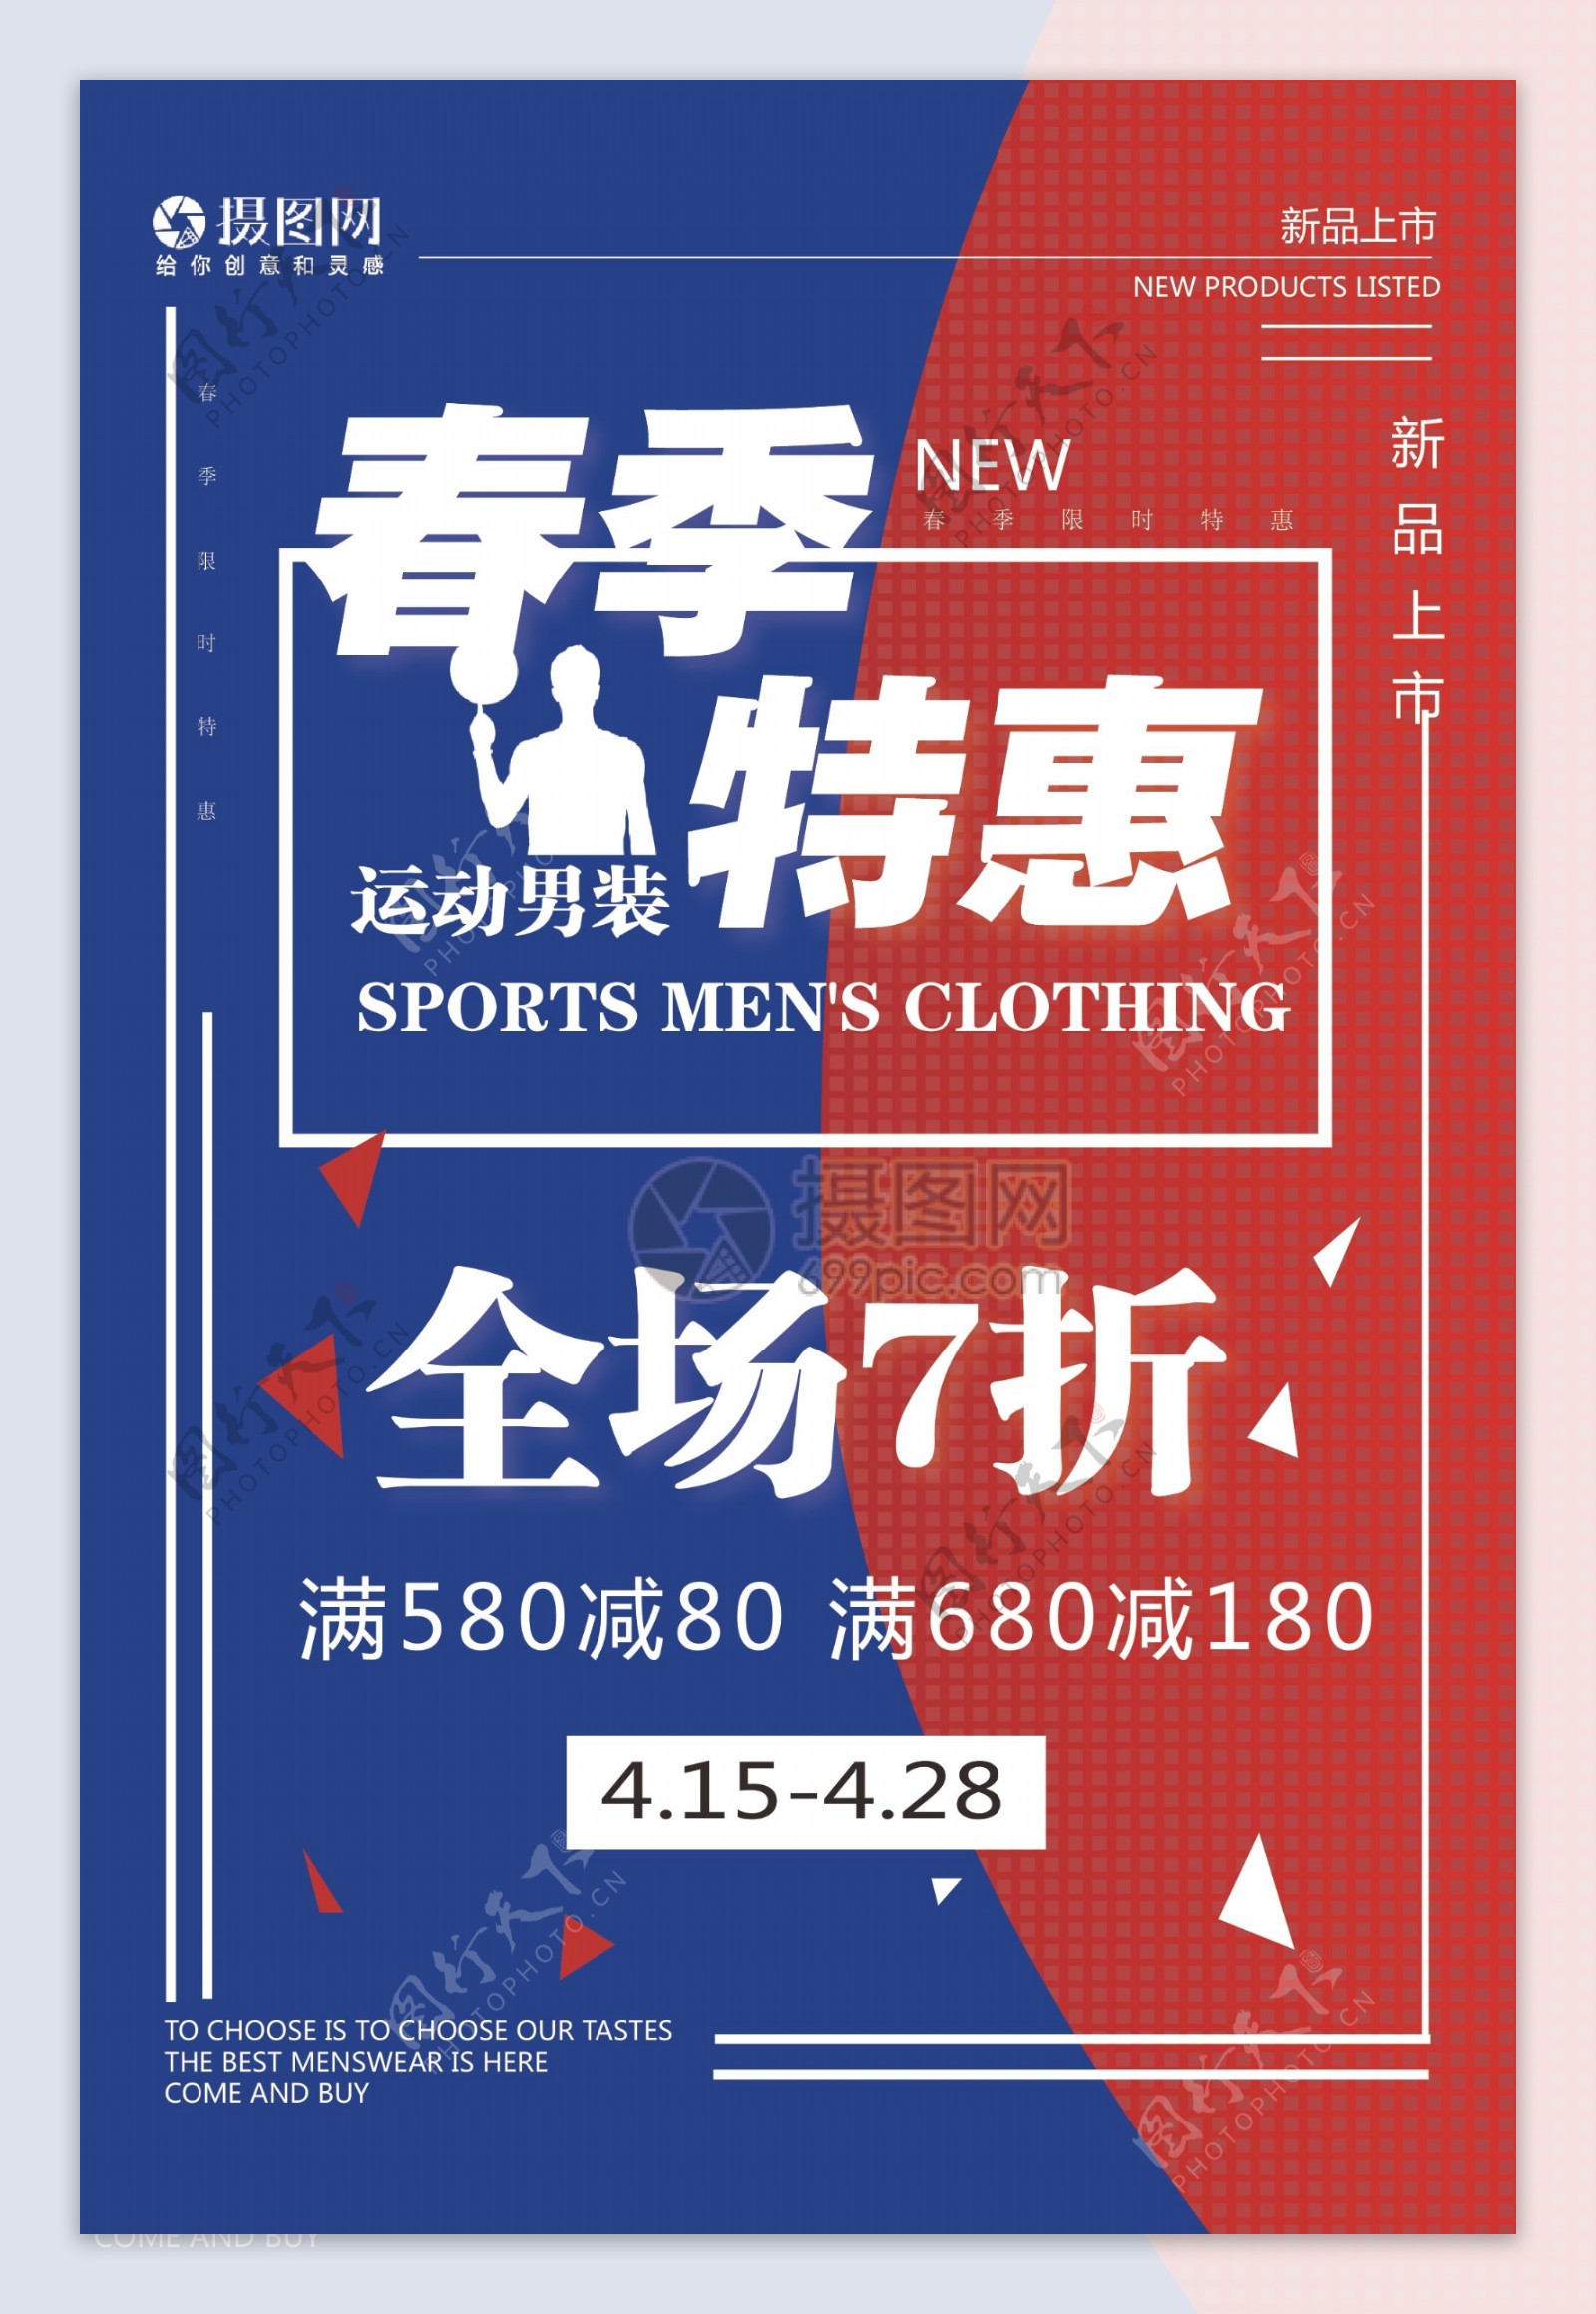 蓝色红色相间简约活力促销服装宣传海报